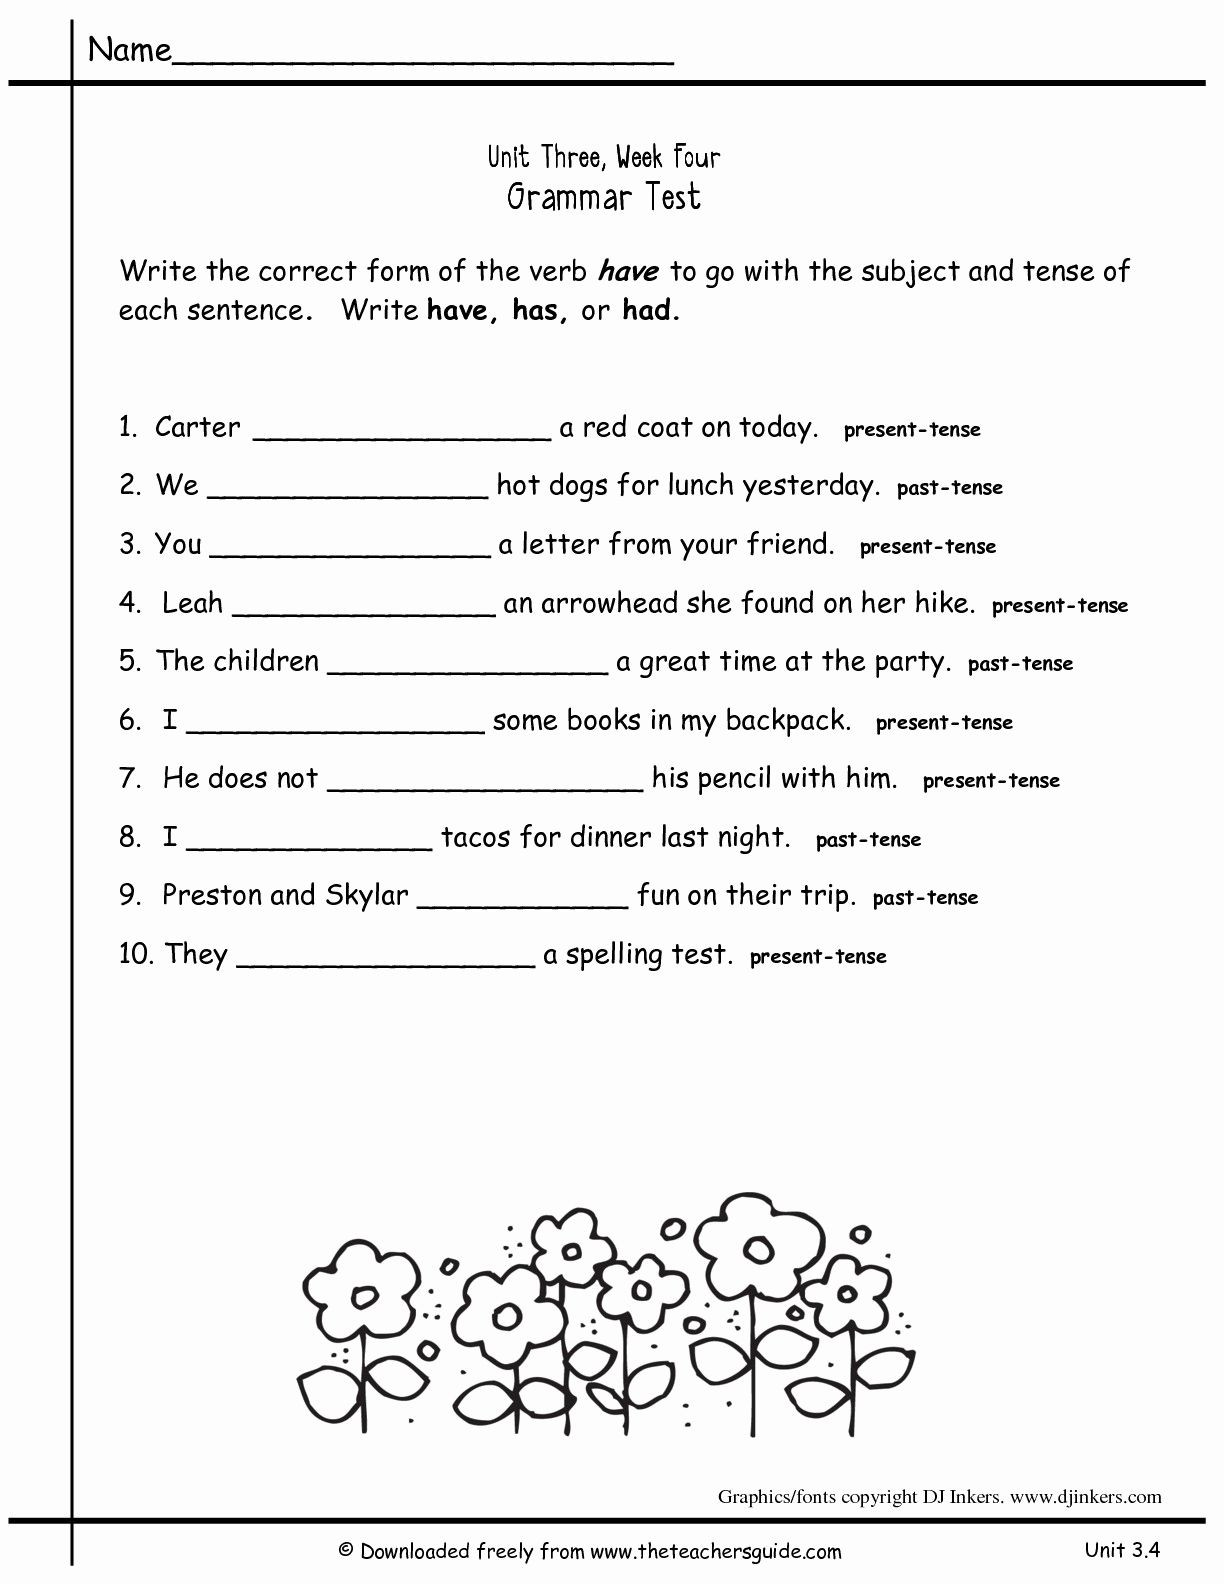 Grammar Worksheets for 2nd Grade 2nd Grade Grammar Worksheets Pdf New Worksheets for All